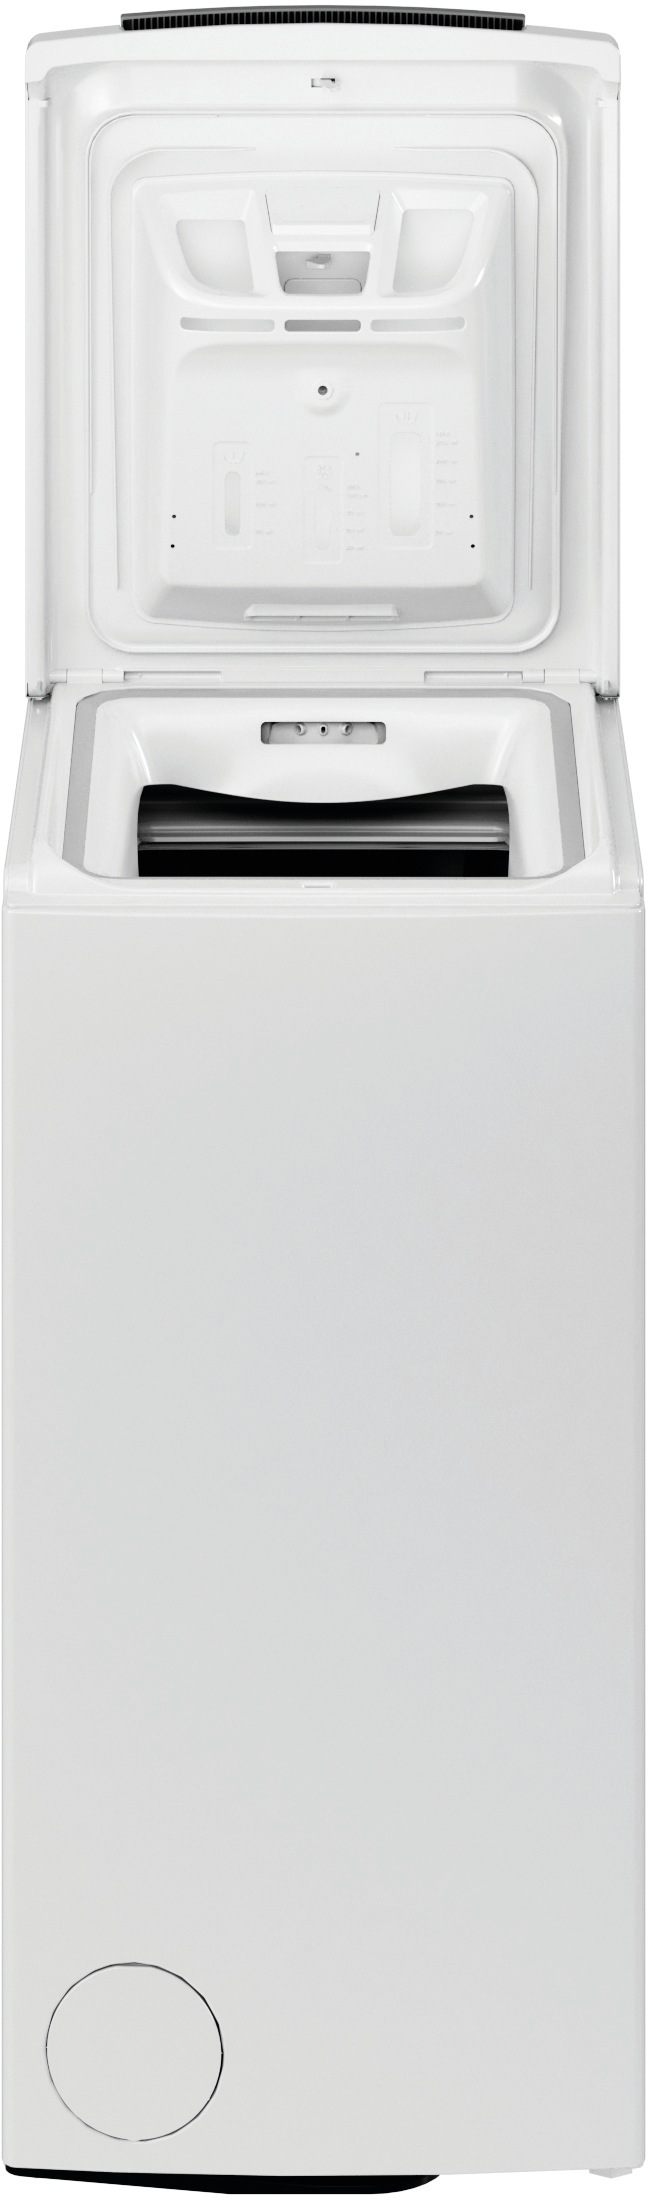 BAUKNECHT Waschmaschine Toplader »WMT Eco Shield 6523 C«, WMT Eco Shield 6523 C, 6,5 kg, 1200 U/min